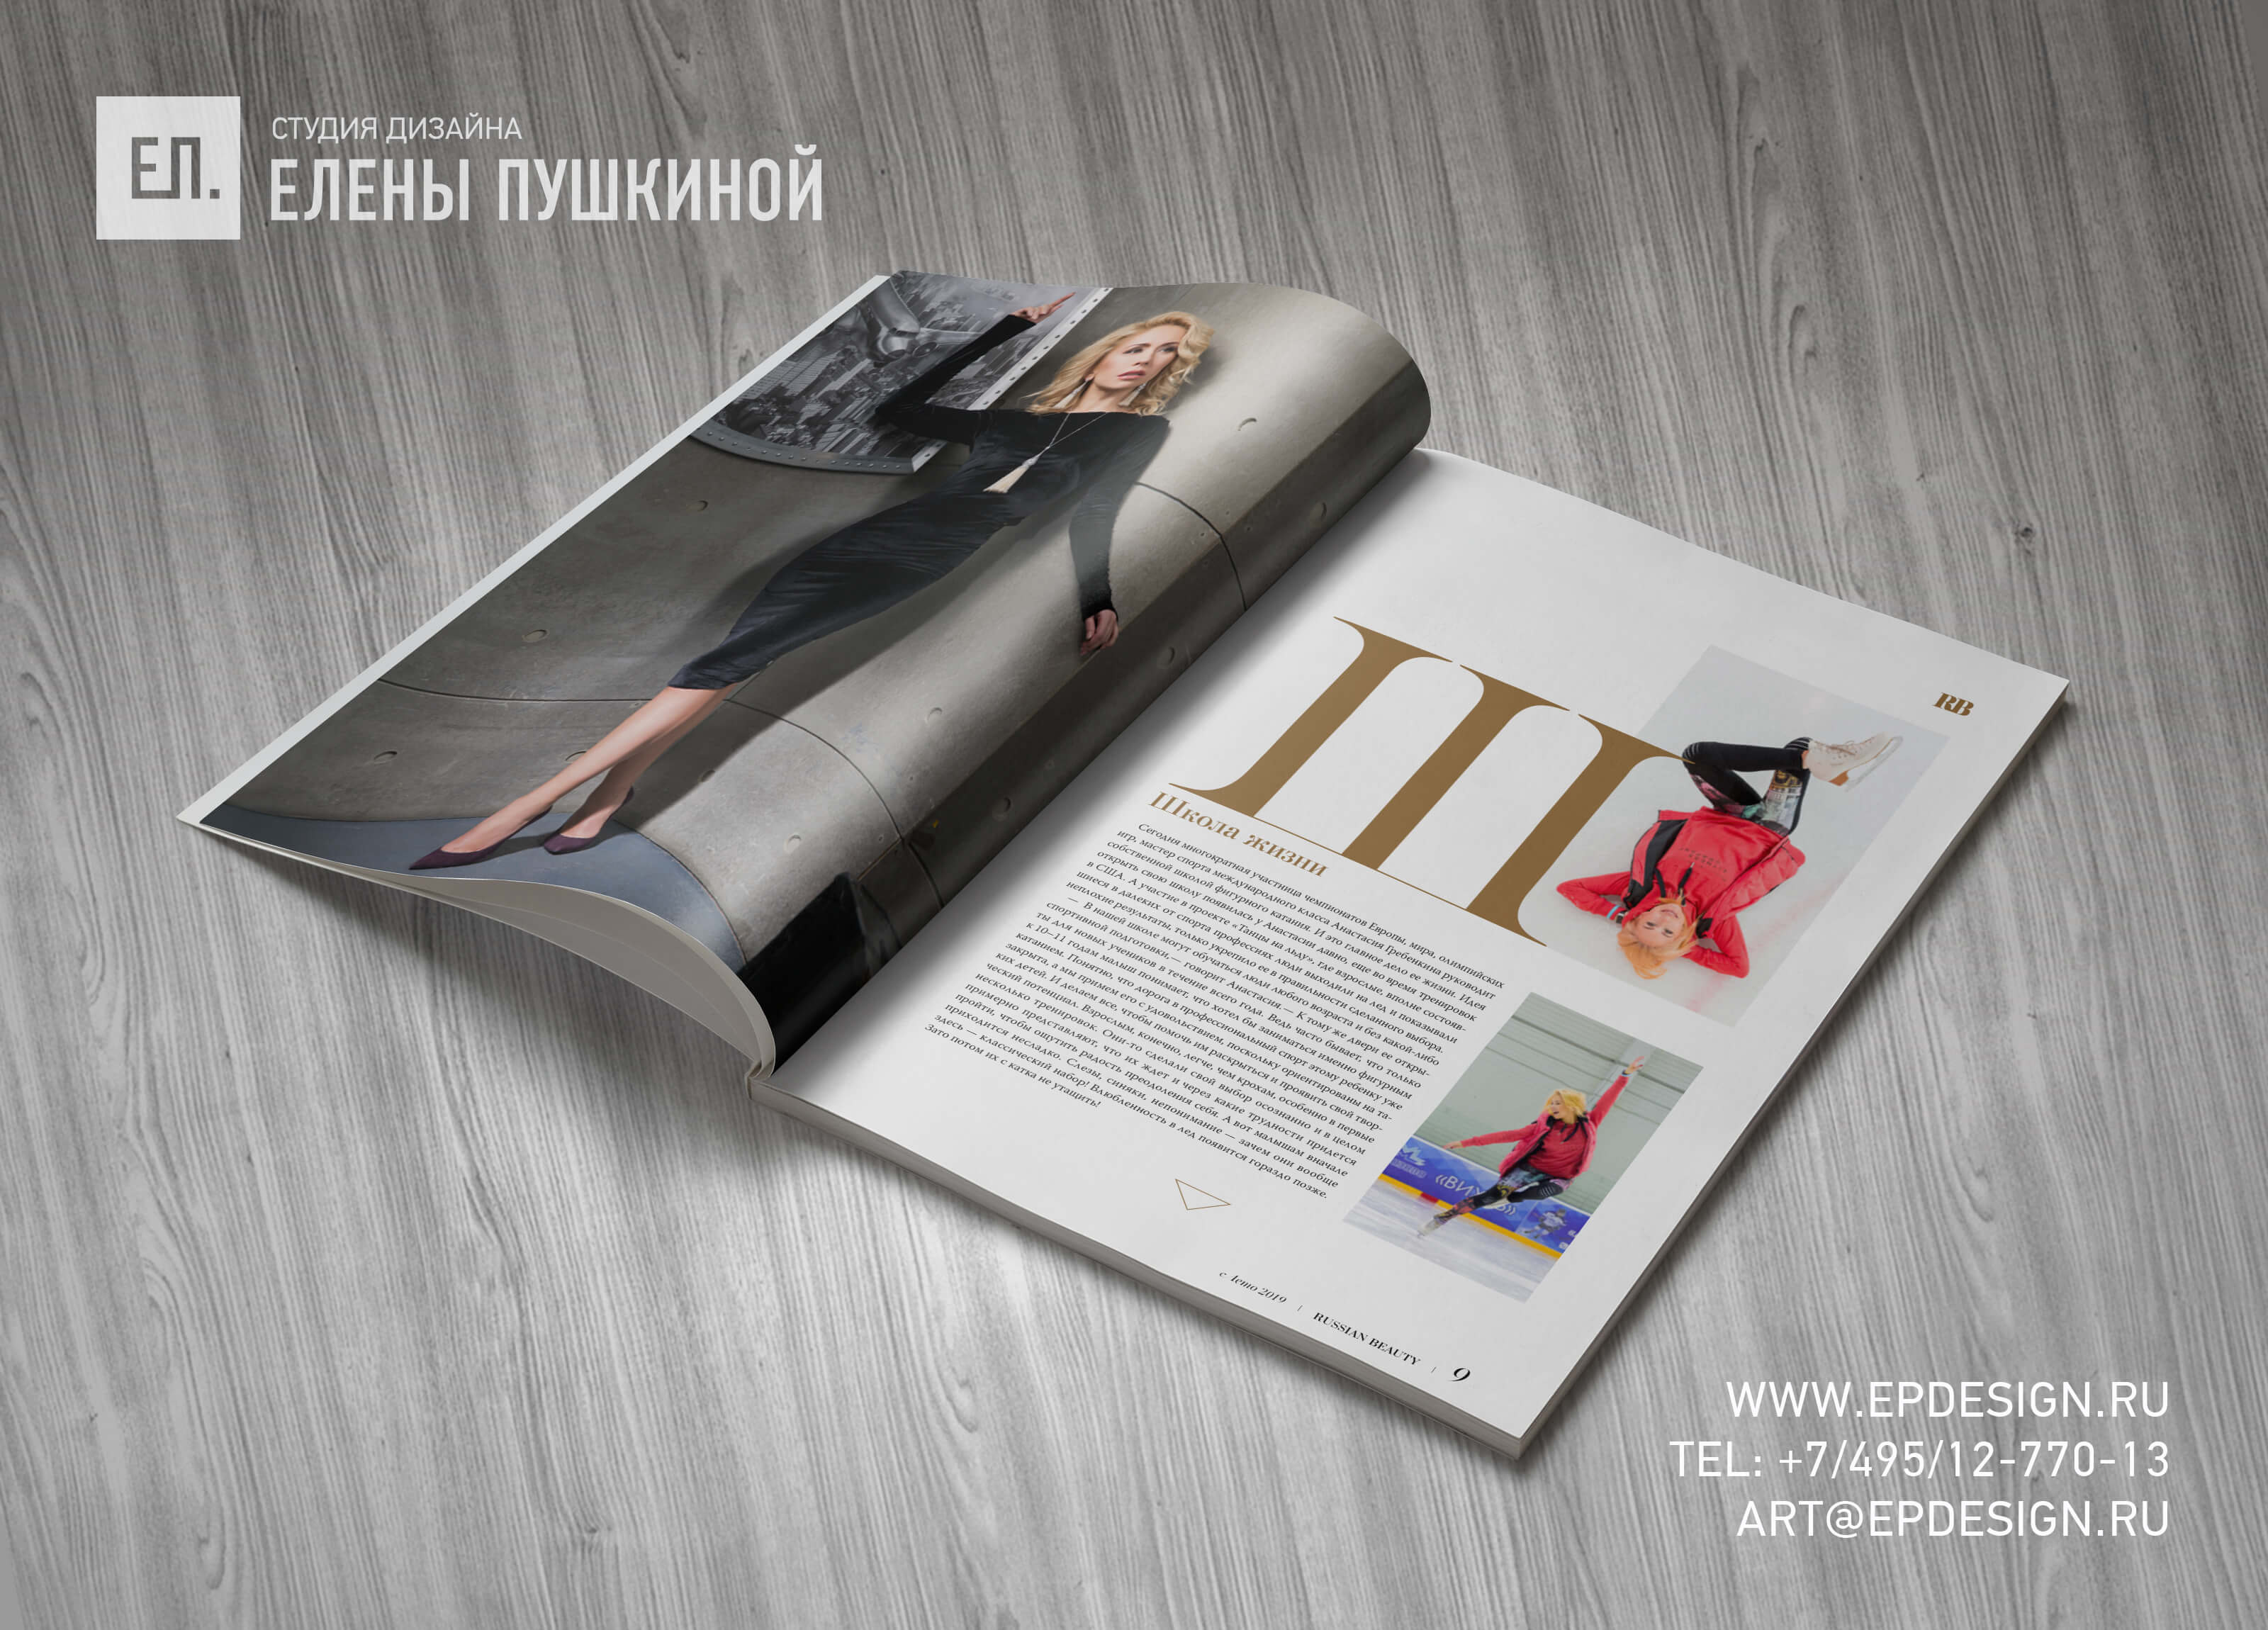 Глянцевый Luxury журнал «RUSSIAN BEAUTY» №6 сентябрь 2019 — разработка с «нуля» логотипа, обложки, макета и вёрстка журнала Разработка журналов Портфолио